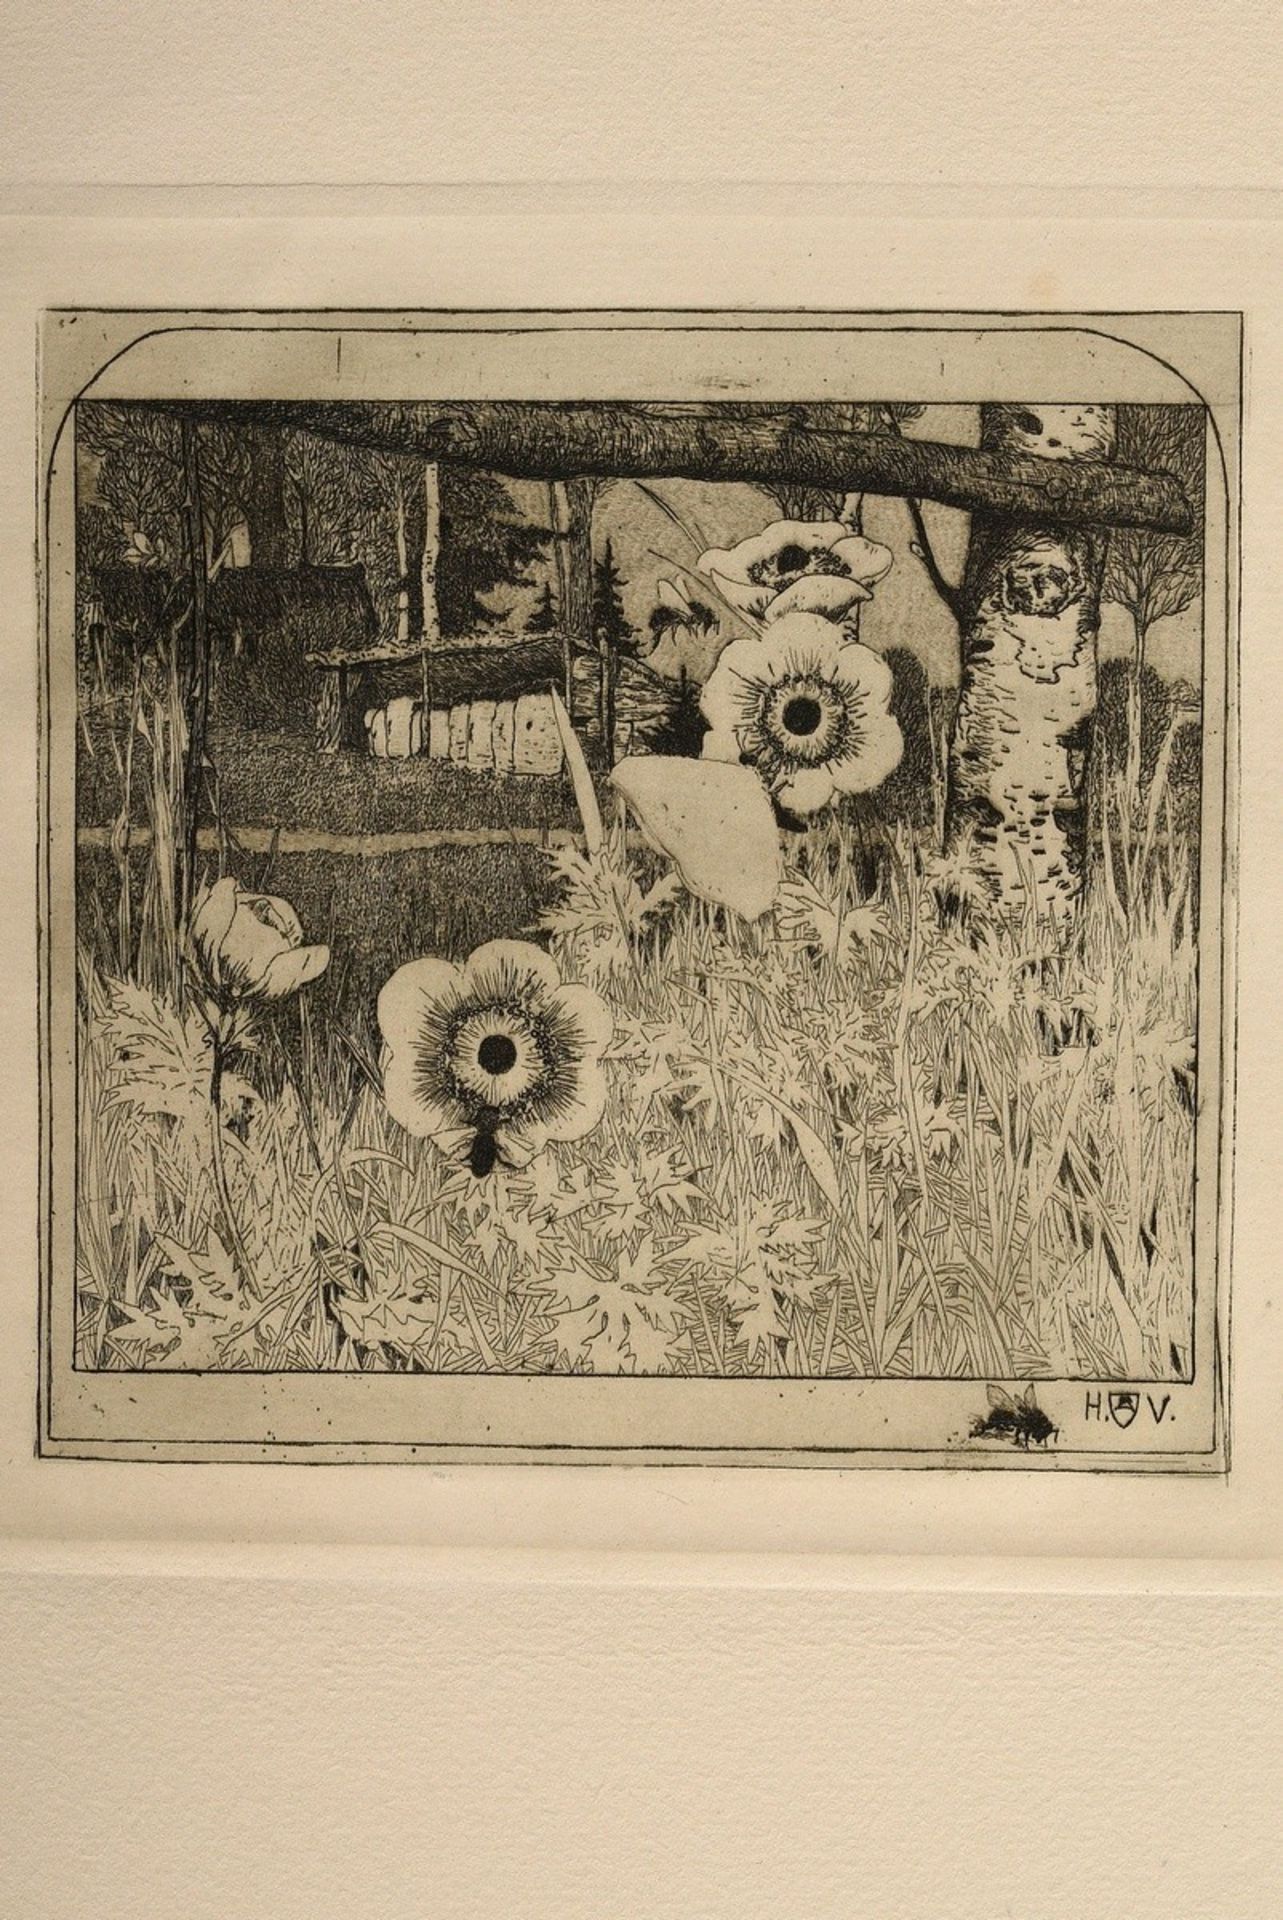 Vogeler, Heinrich (1872-1942) "An den Frühling" 1899/1901, portfolio with 10 etchings and prelimina - Image 5 of 25